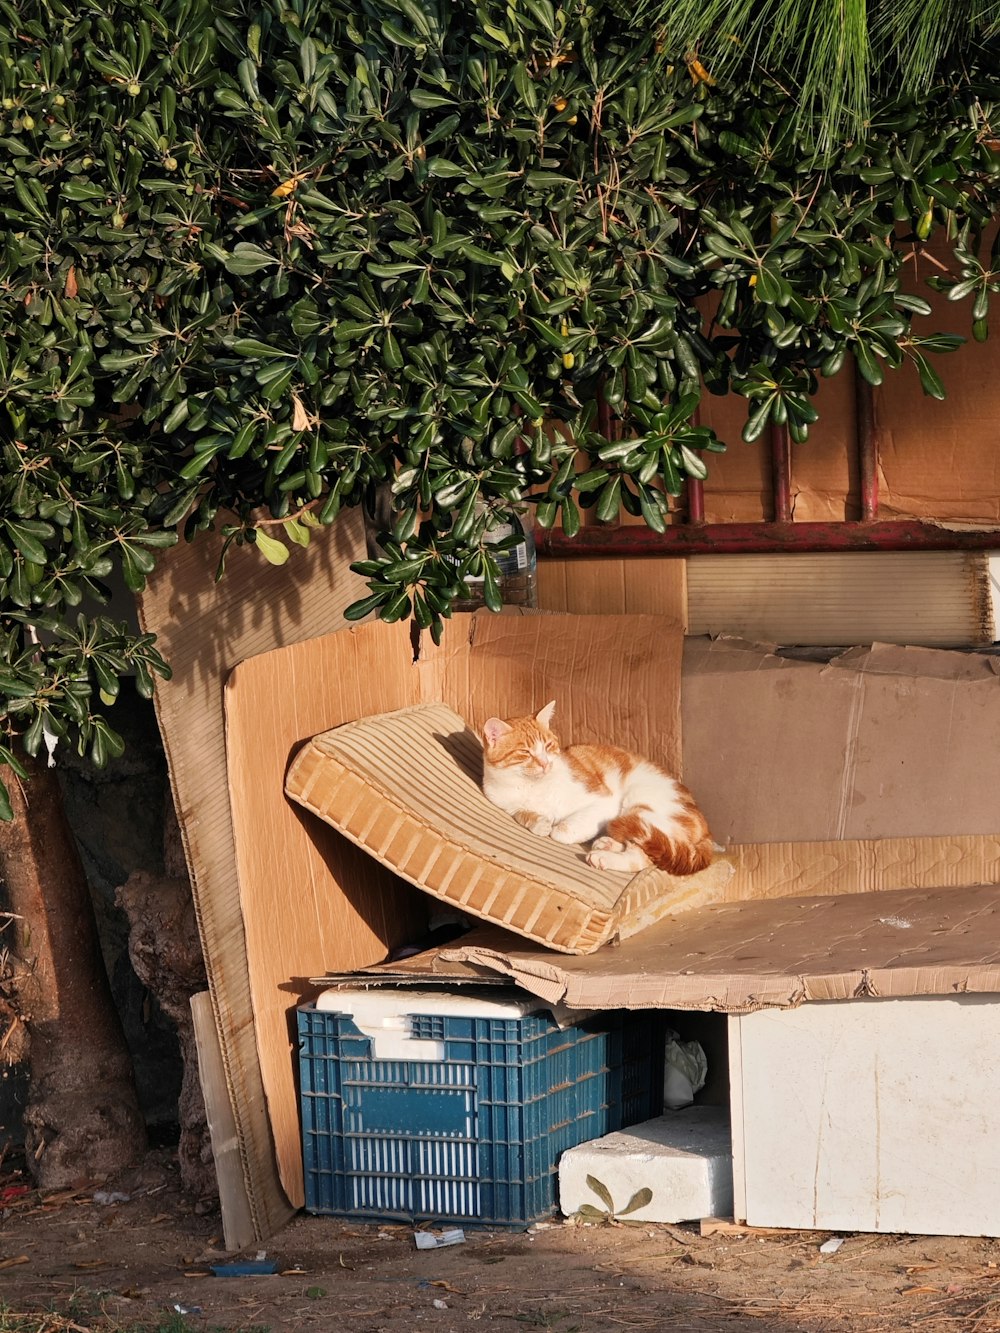 un chat orange et blanc couché sur une boîte en carton